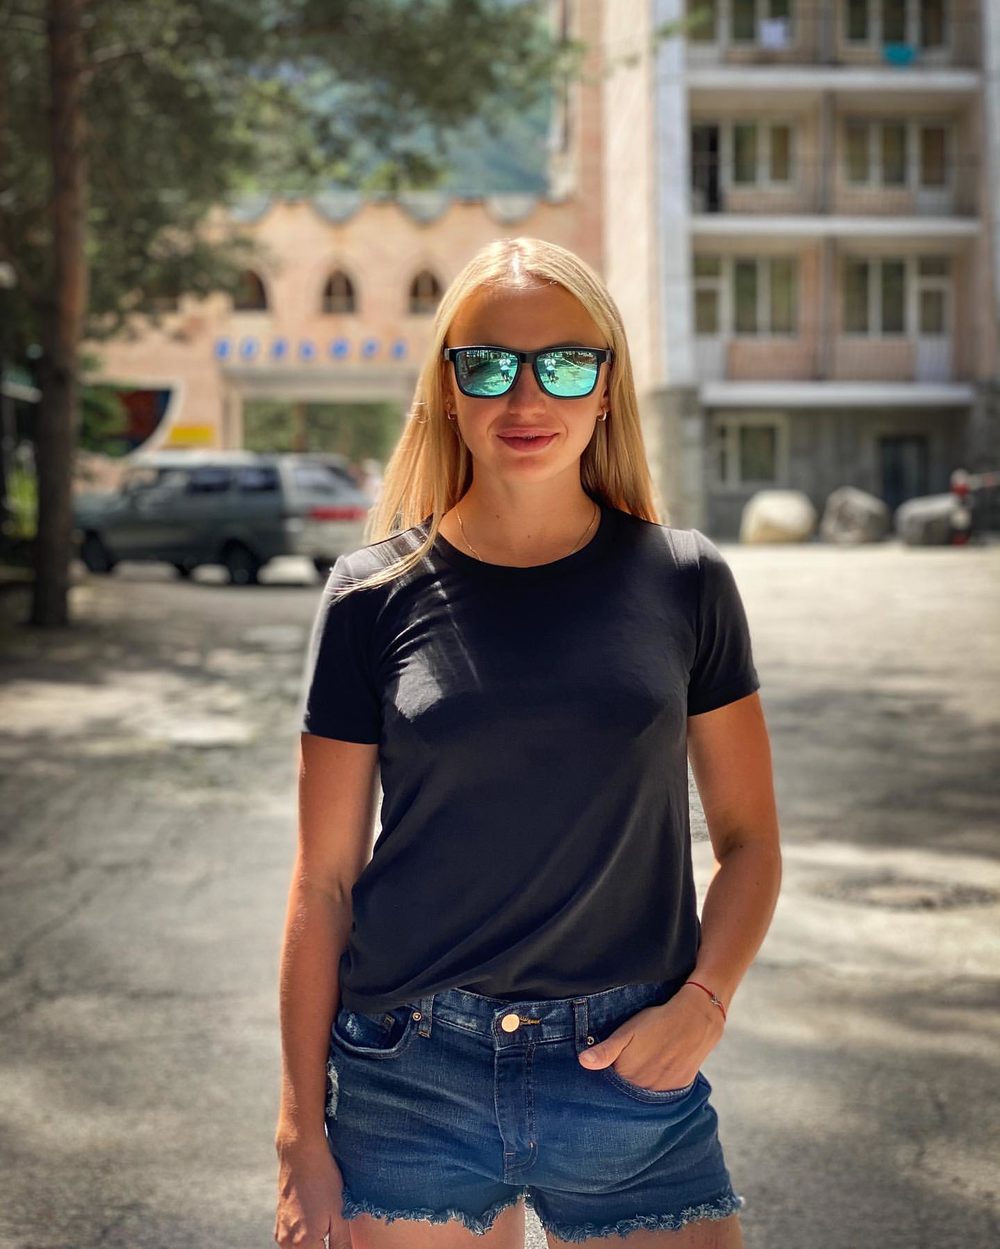 Анна Нечаевская сделала новую запись в Instagram